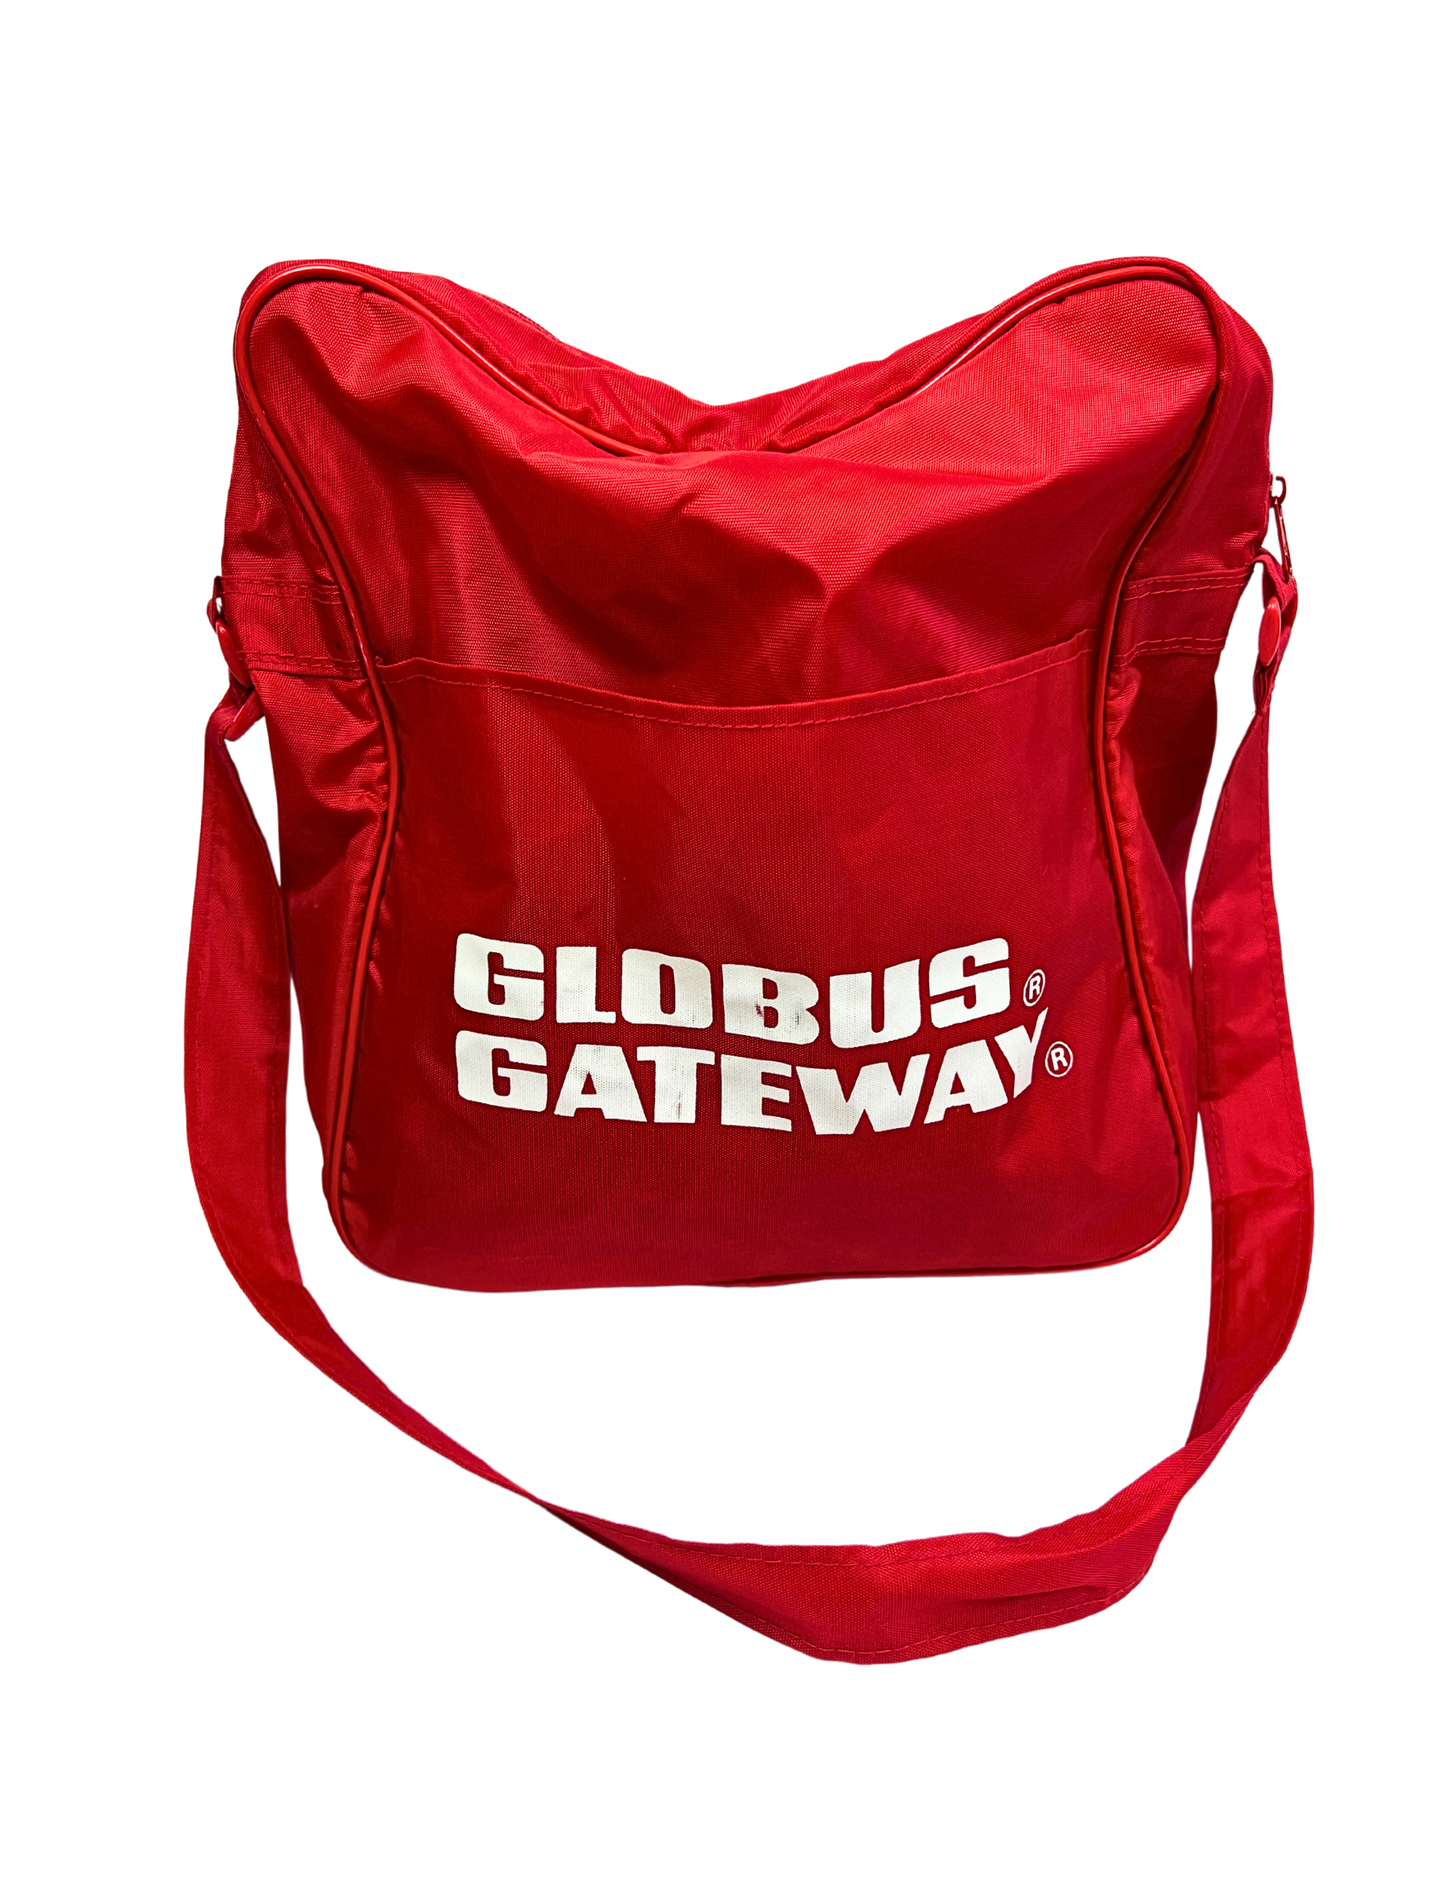 80’s Globus Gateway Carry-On Shoulder Travel Bag